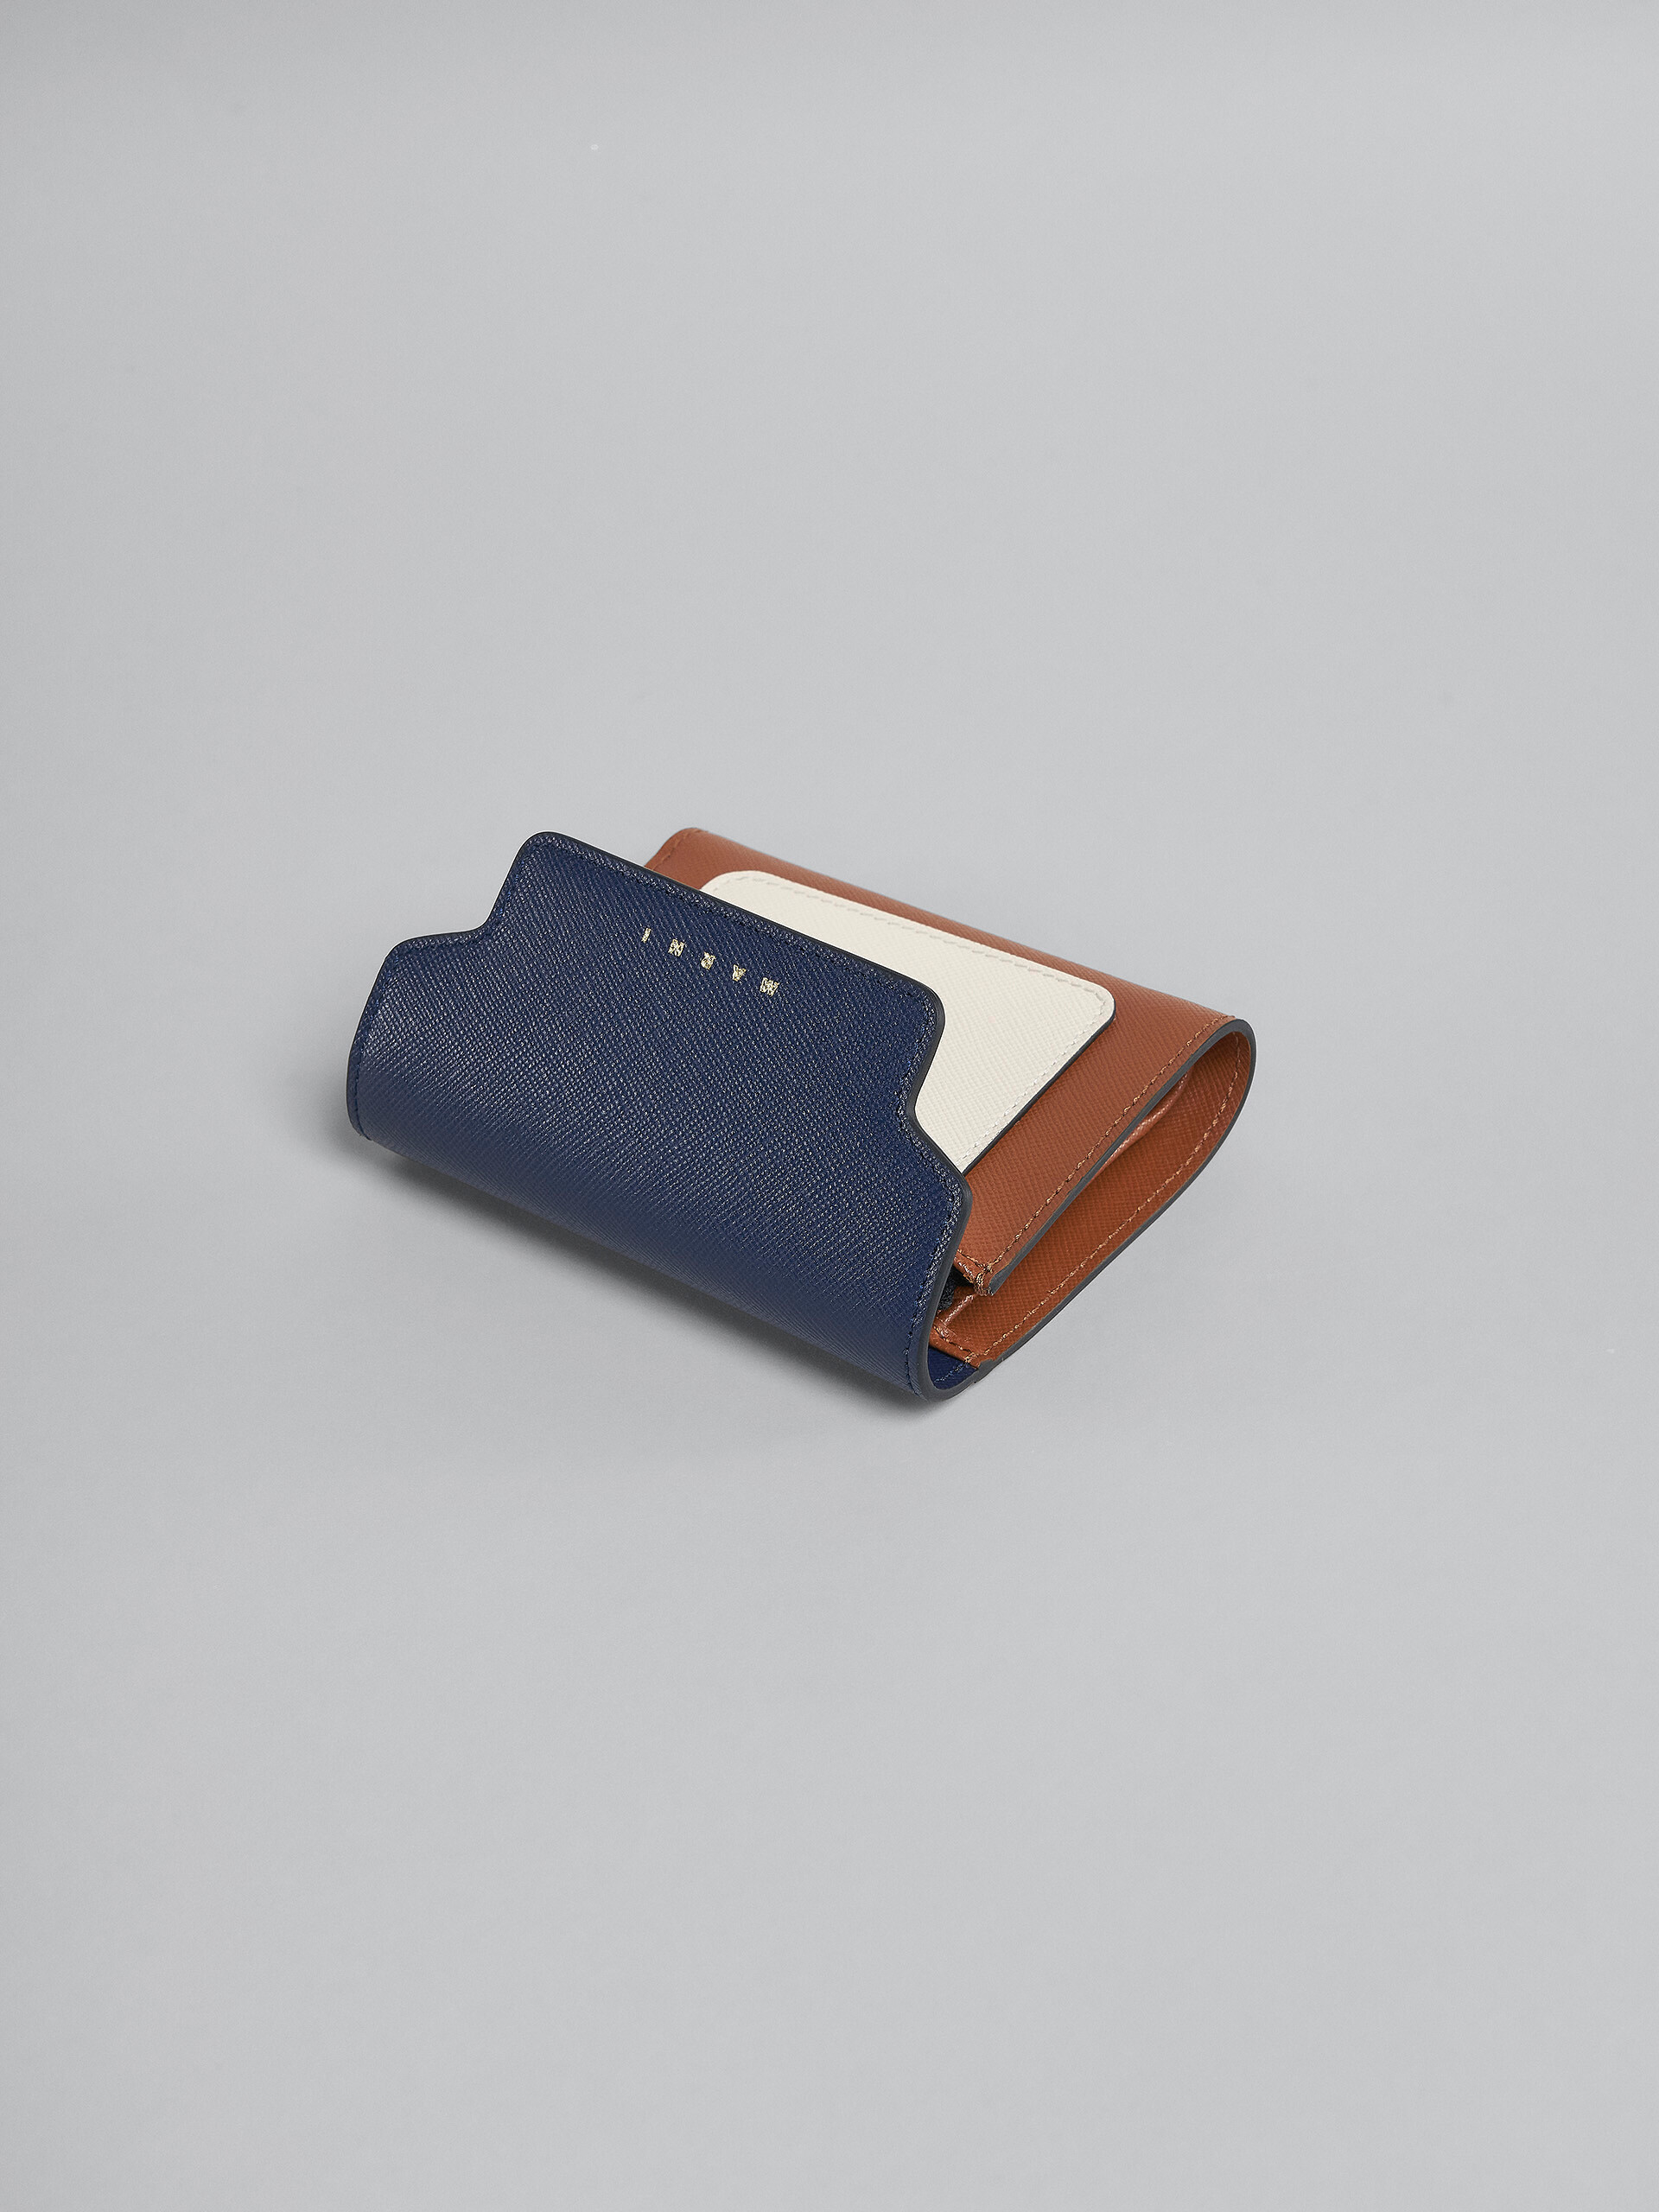 Portafoglio tri-fold in saffiano blu bianco e marrone - Portafogli - Image 4